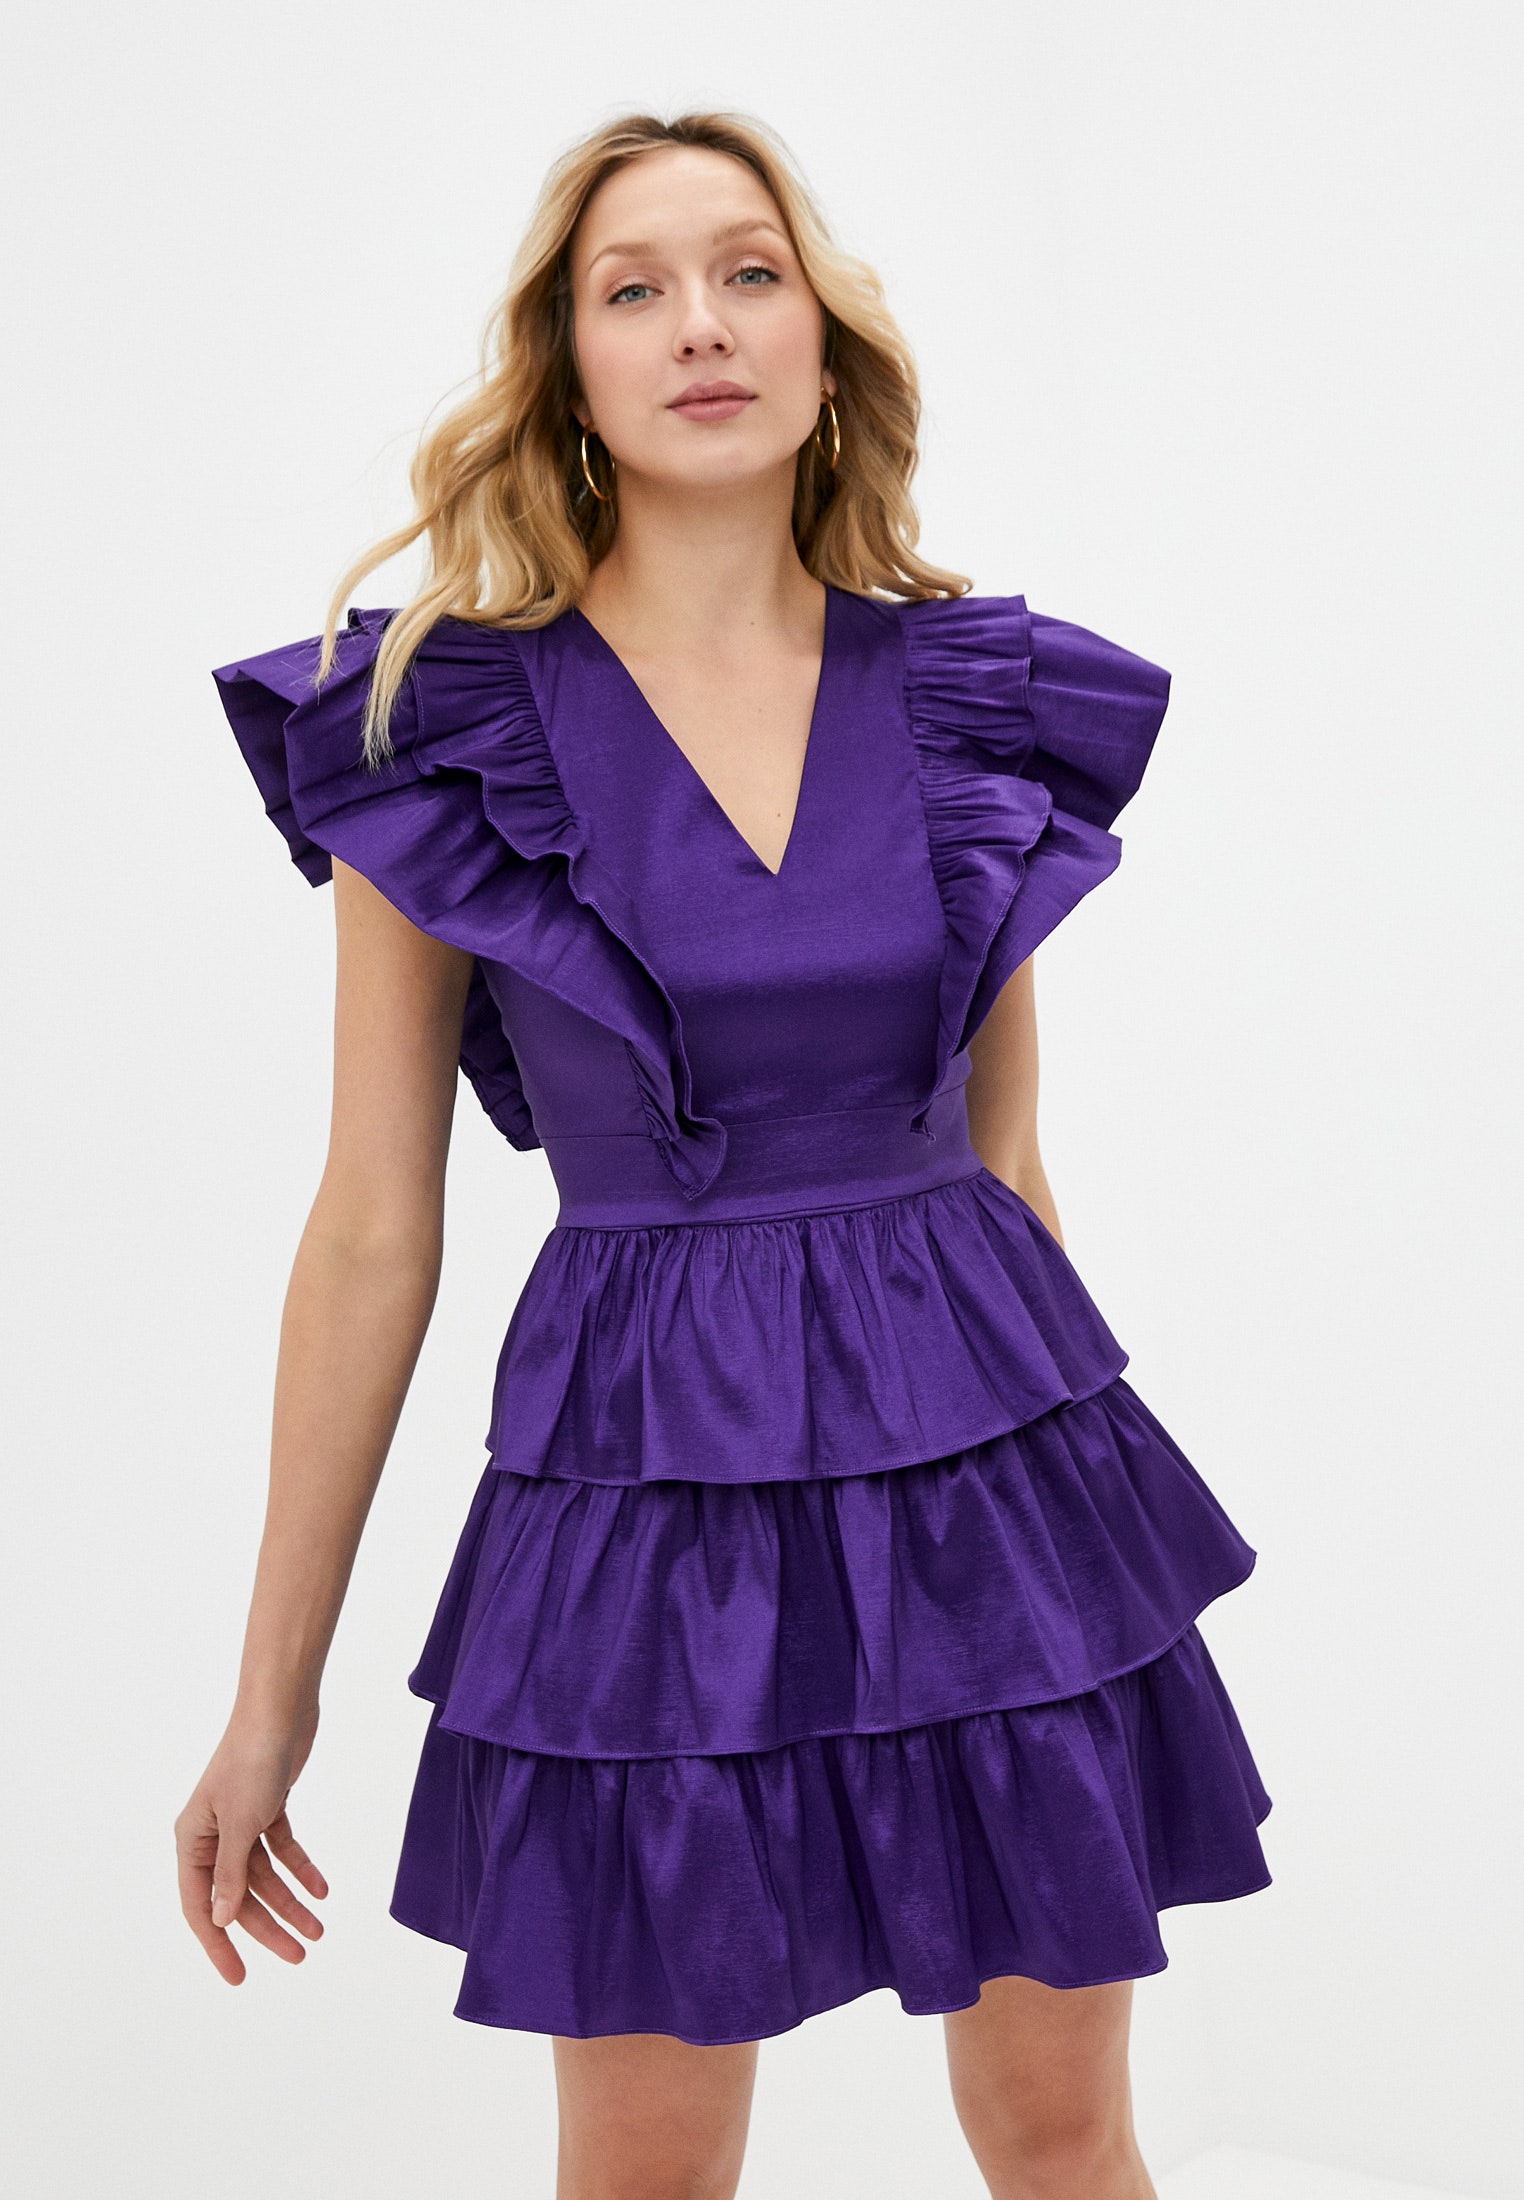 Тренд лета лиловое платье с Vобразным вырезом и оборками как у Лили Коллинз